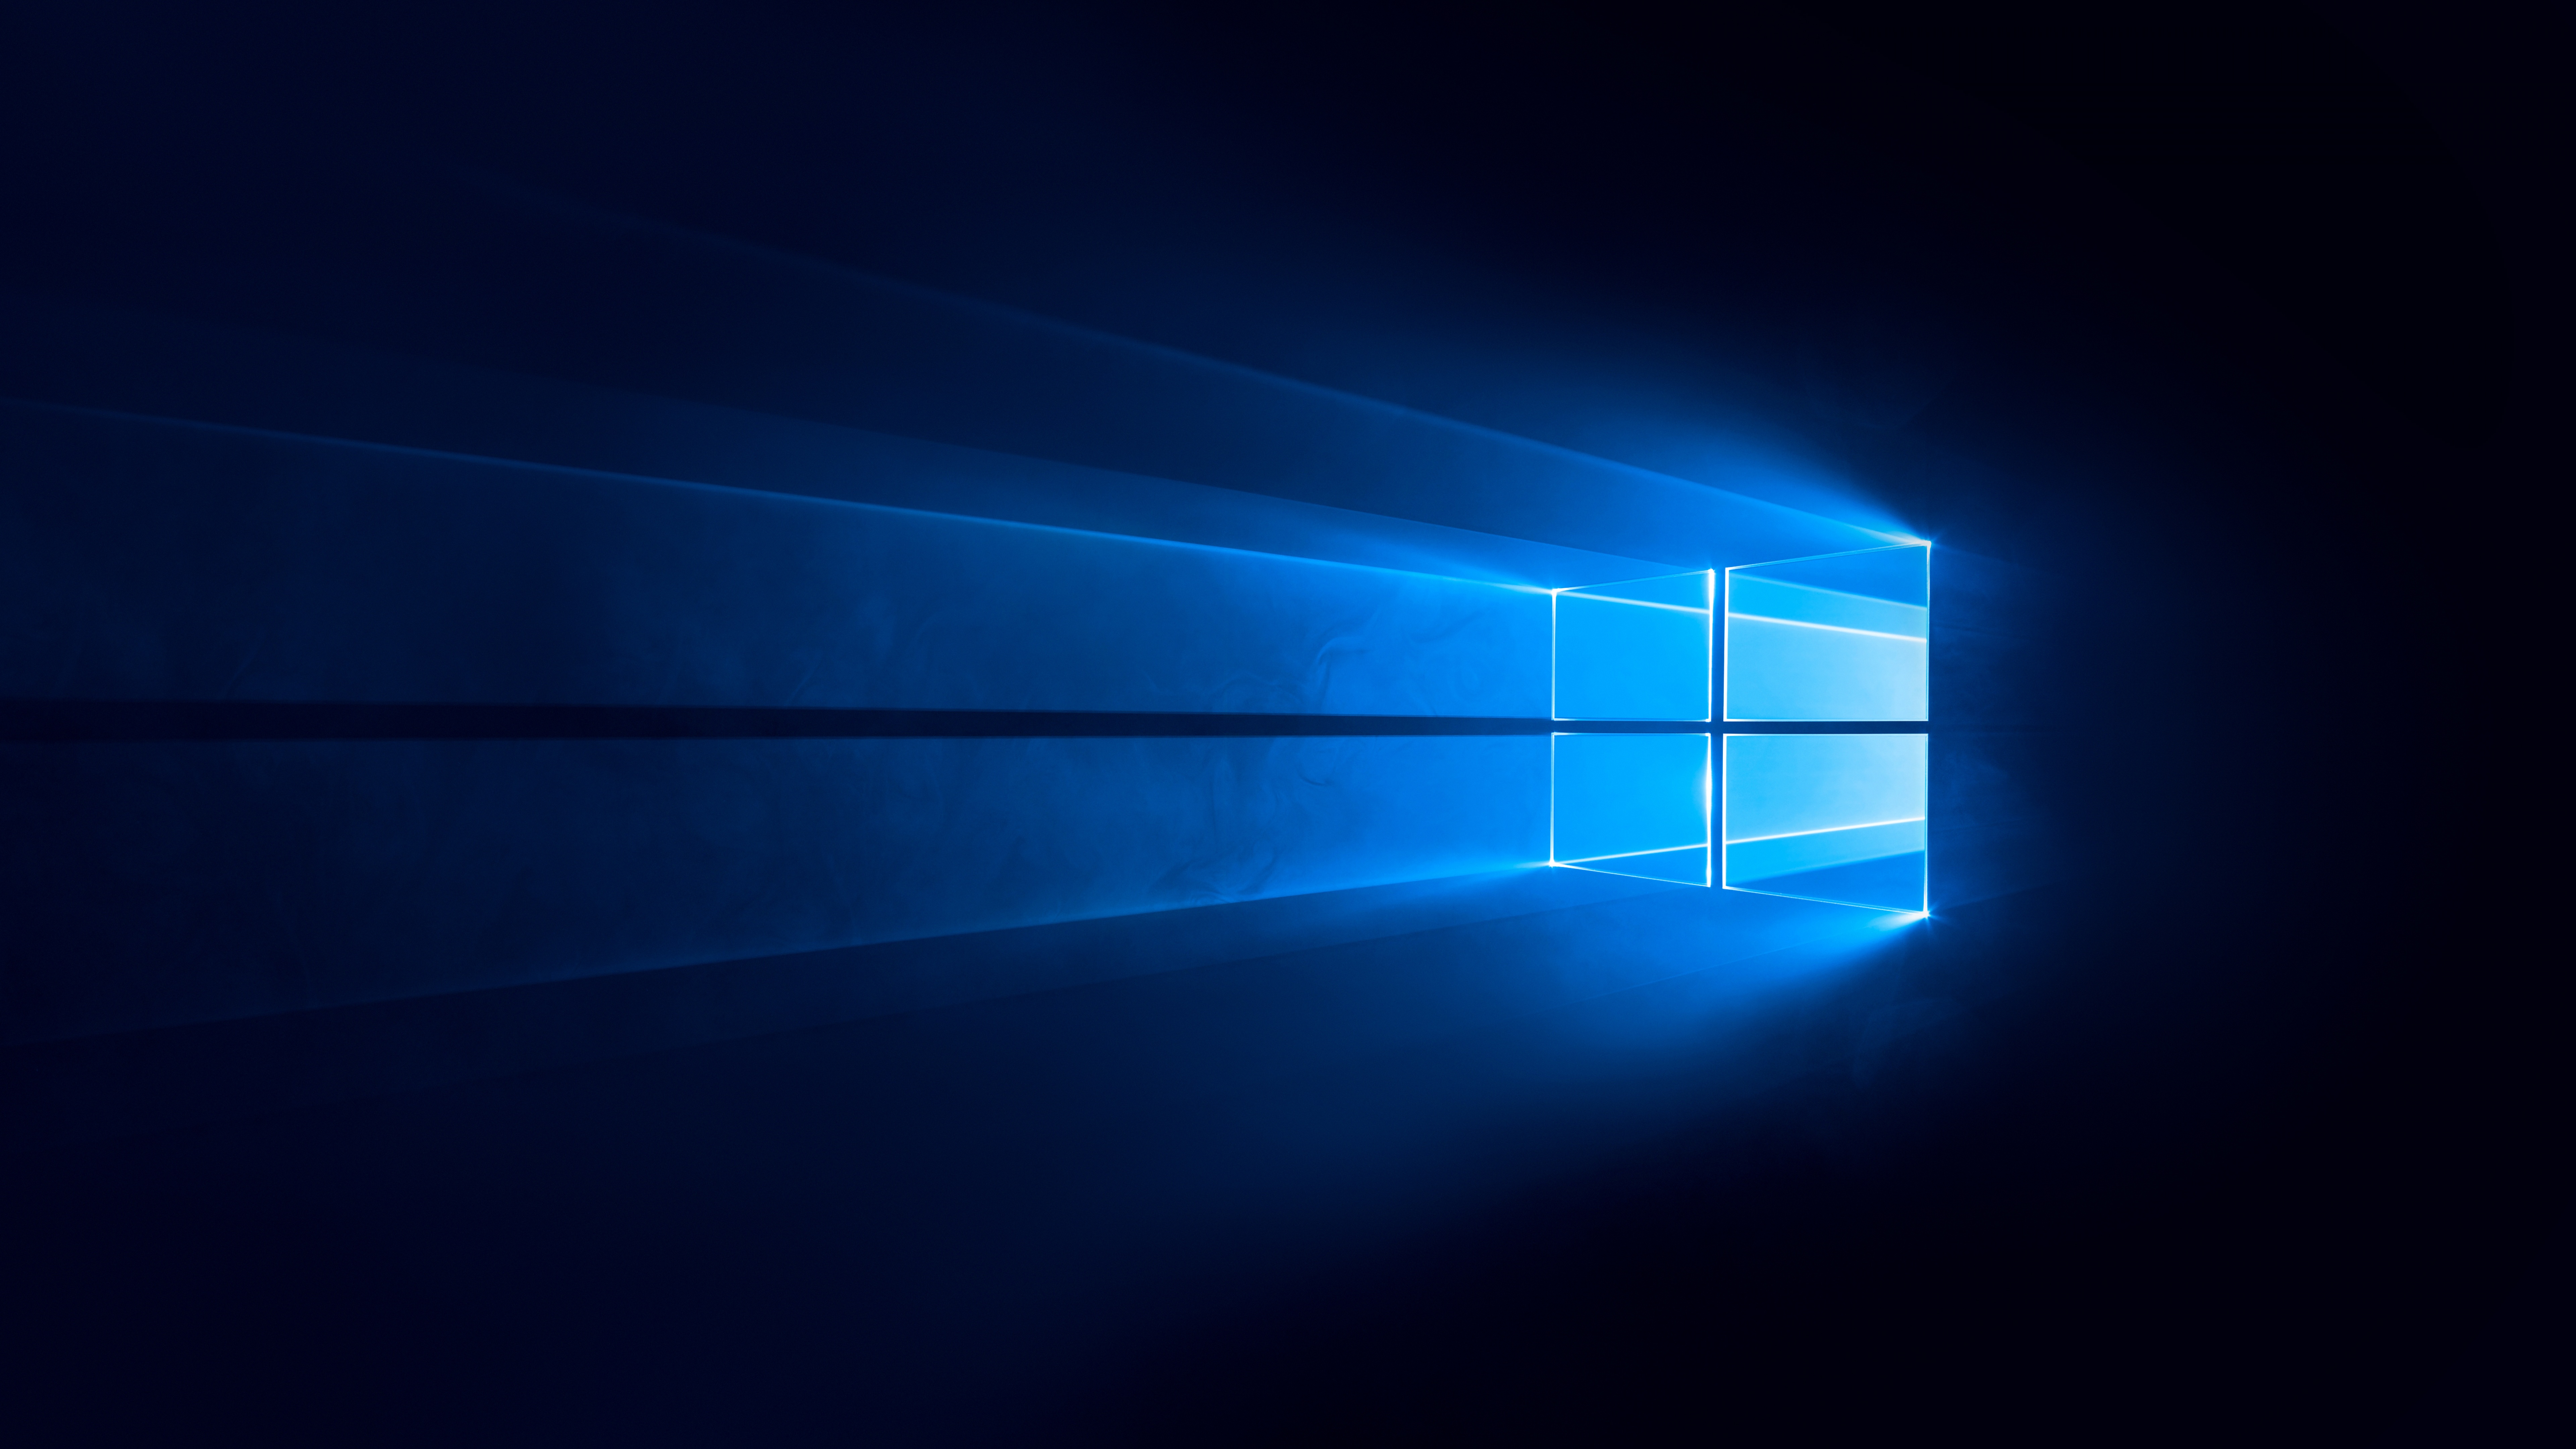 Cùng khám phá hình nền Windows 10 4K với gam màu đen và nền xanh phong cách. Với công nghệ mới và hiện đại, hình nền này sẽ mang đến cho bạn trải nghiệm tuyệt vời trên máy tính của bạn. Hãy click vào hình để chiêm ngưỡng và tải ngay cho máy tính của bạn.